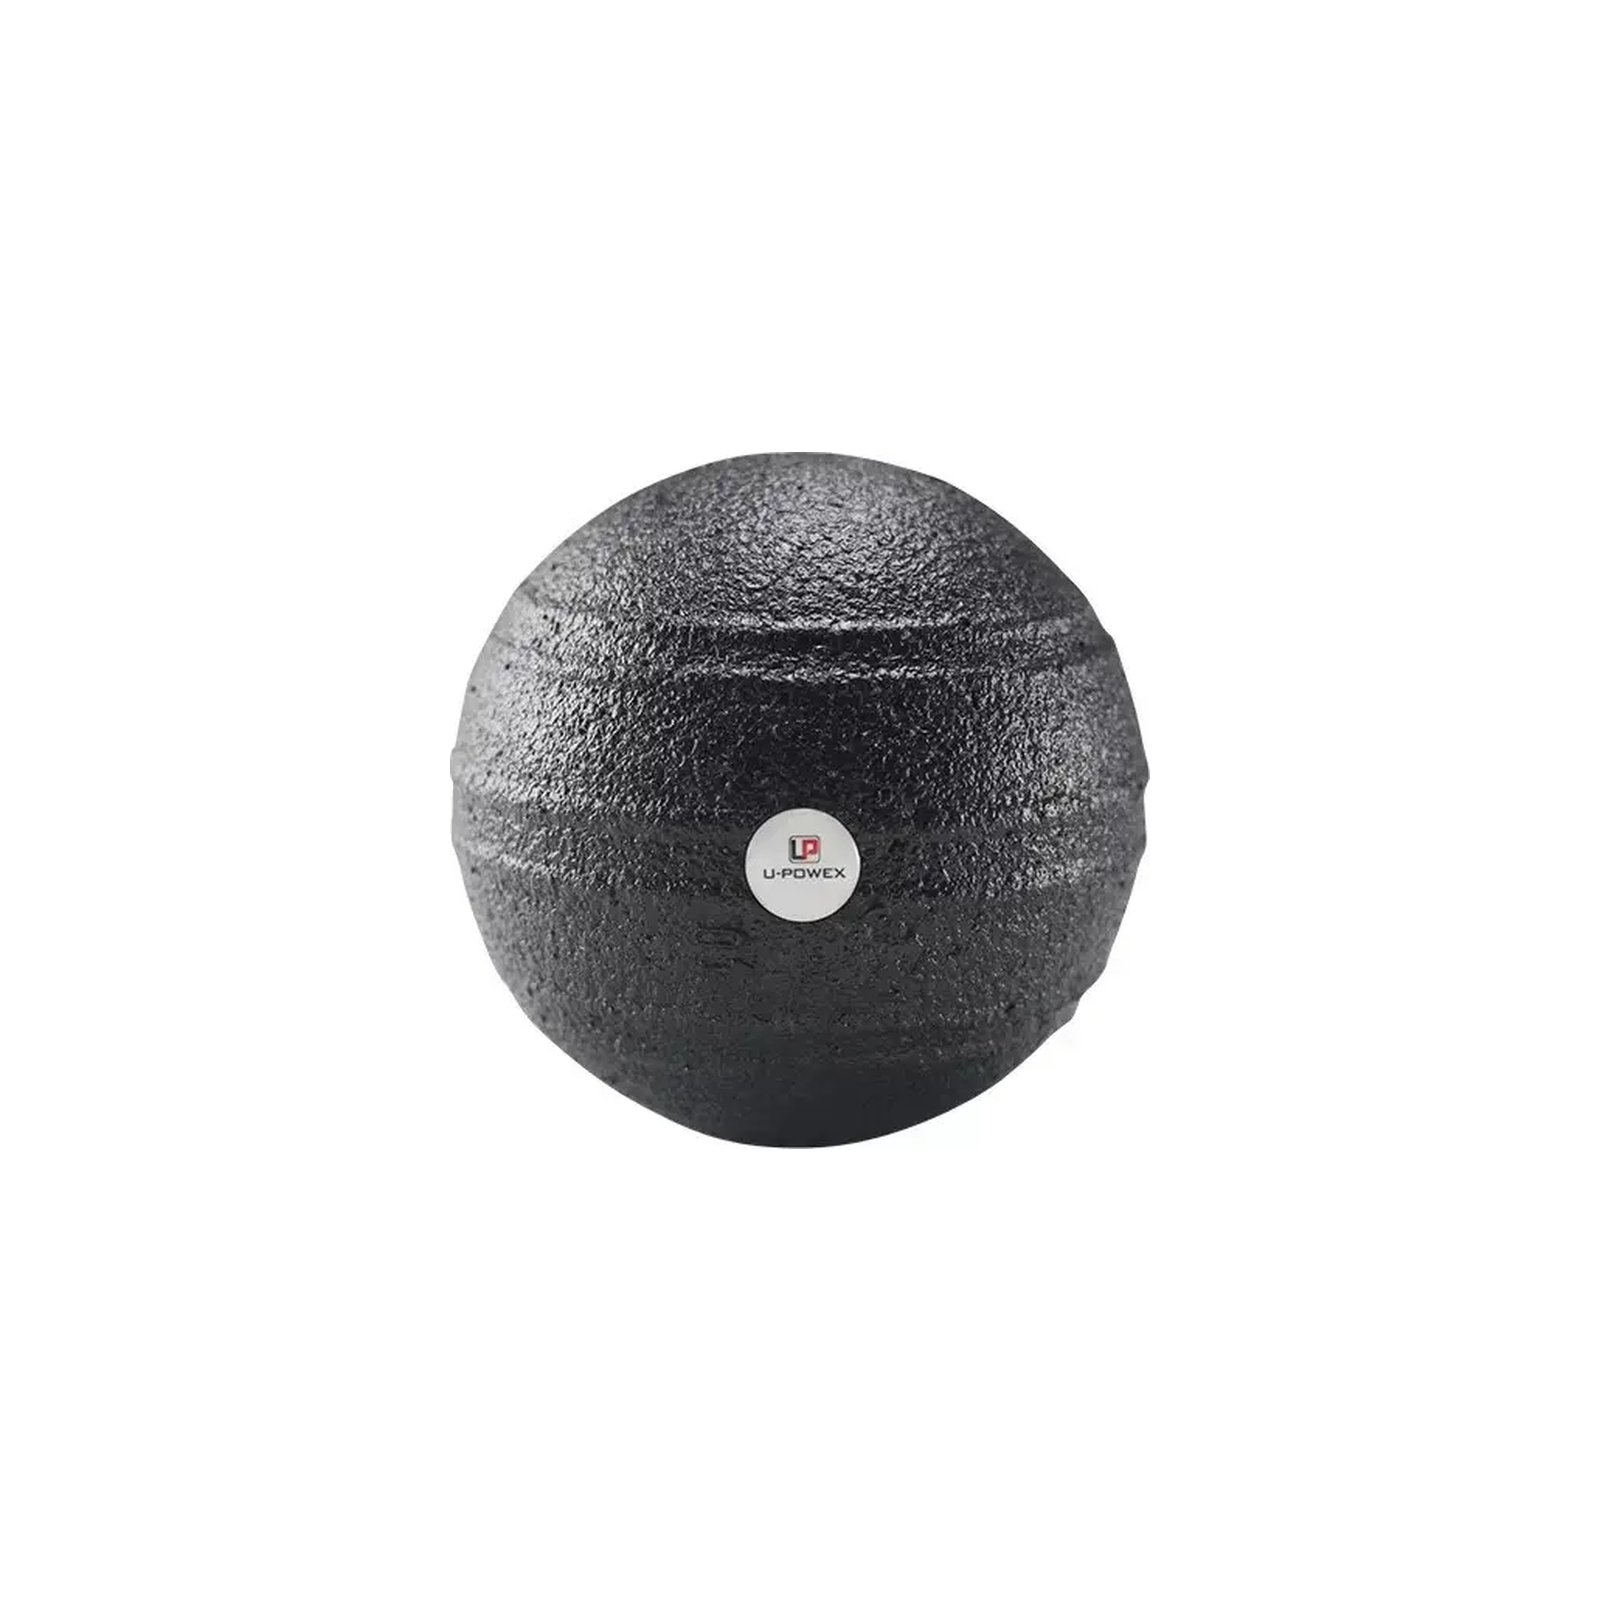 Массажный мяч U-Powex Epp foam ball d10 Black (UP_1003_Ball_D10cm)